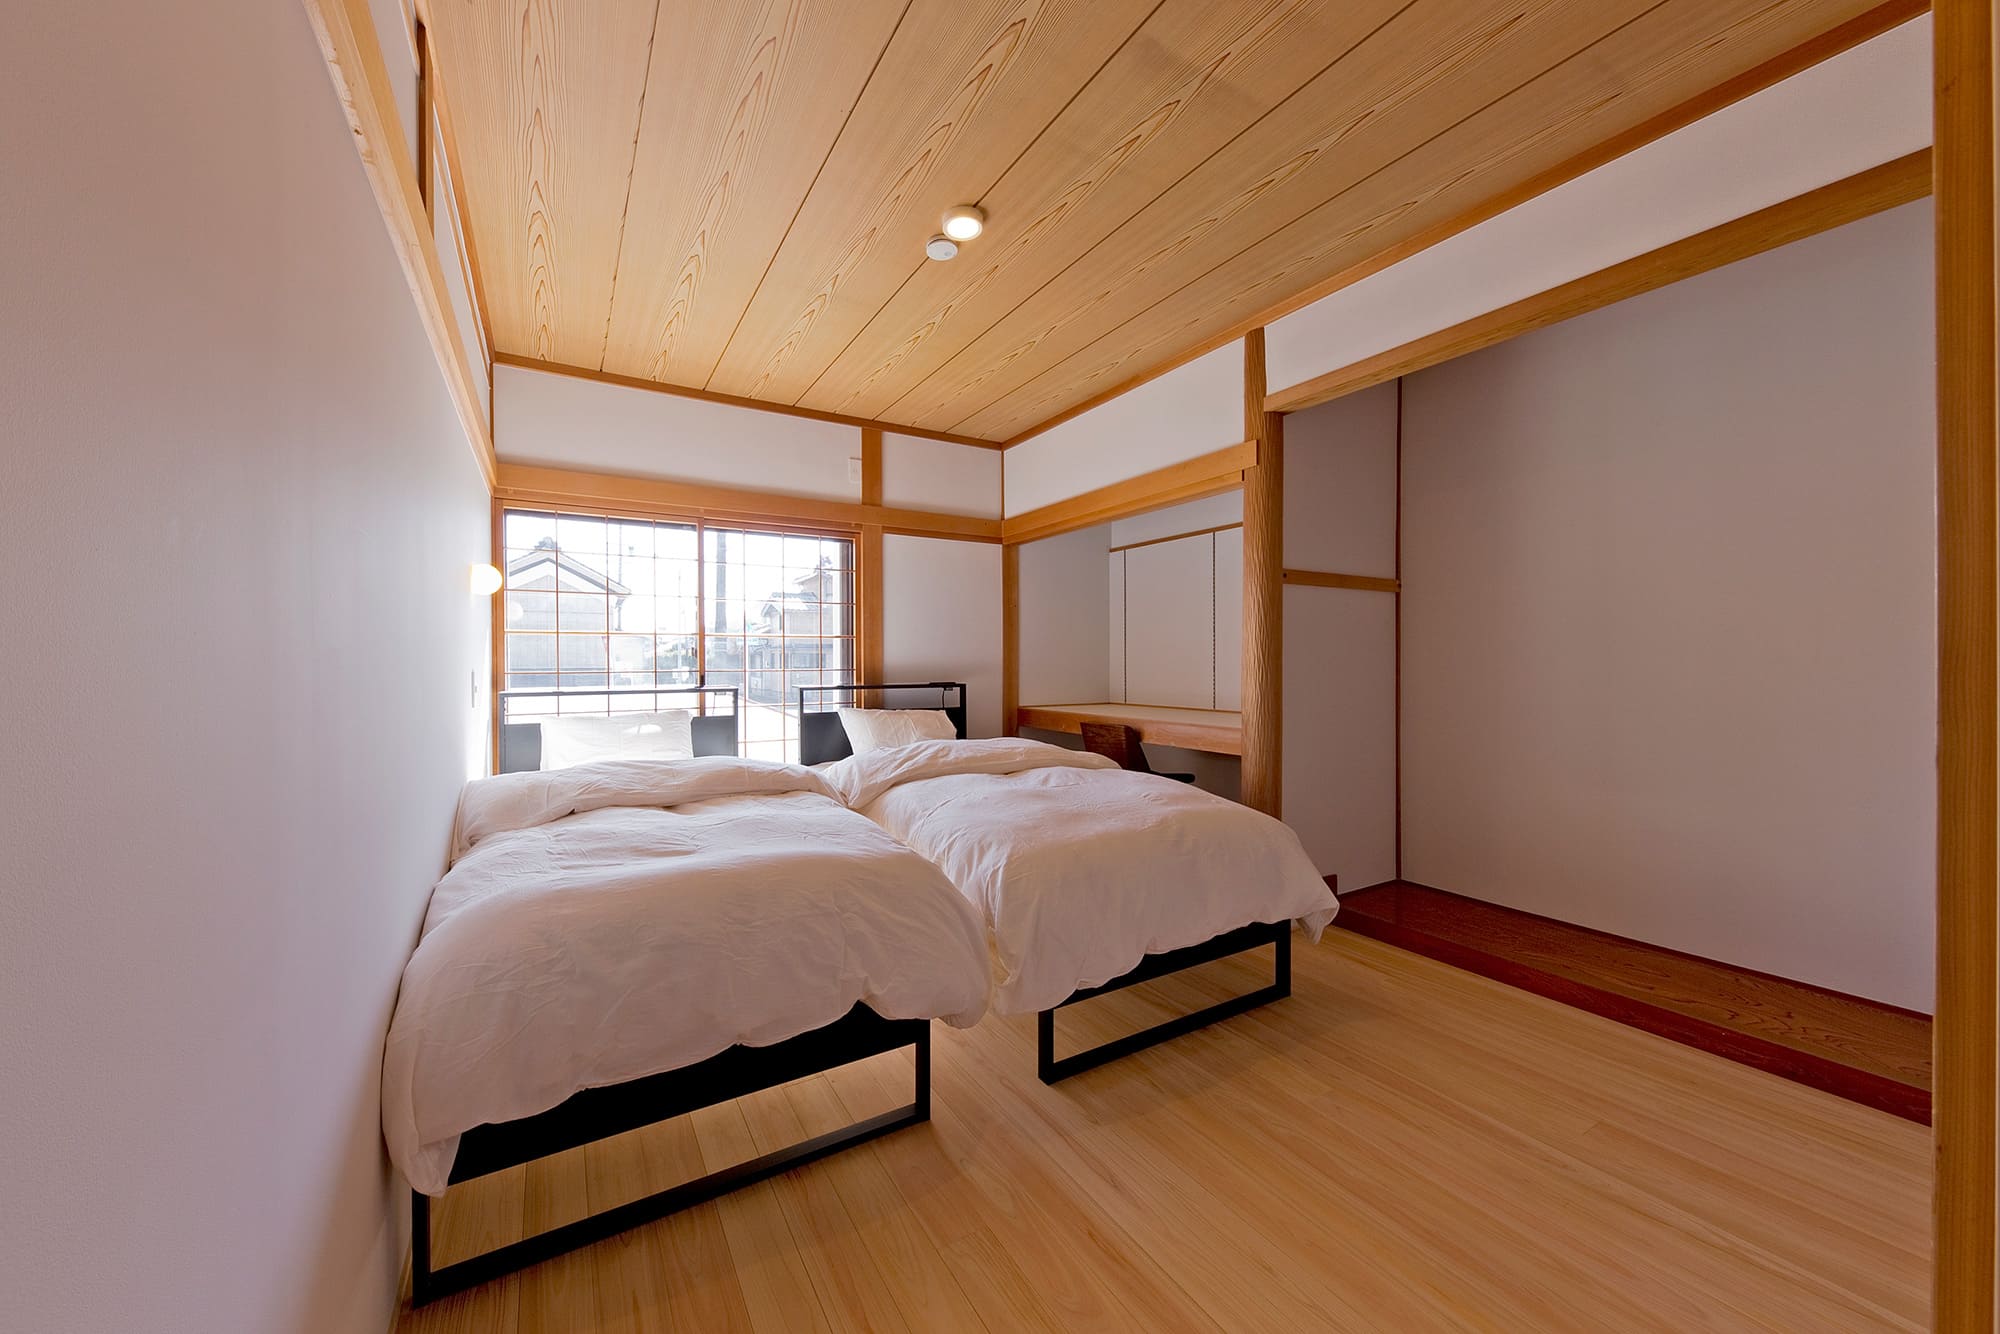 サウナーフ伊勢志摩 シンブルベッドが2台ある寝室